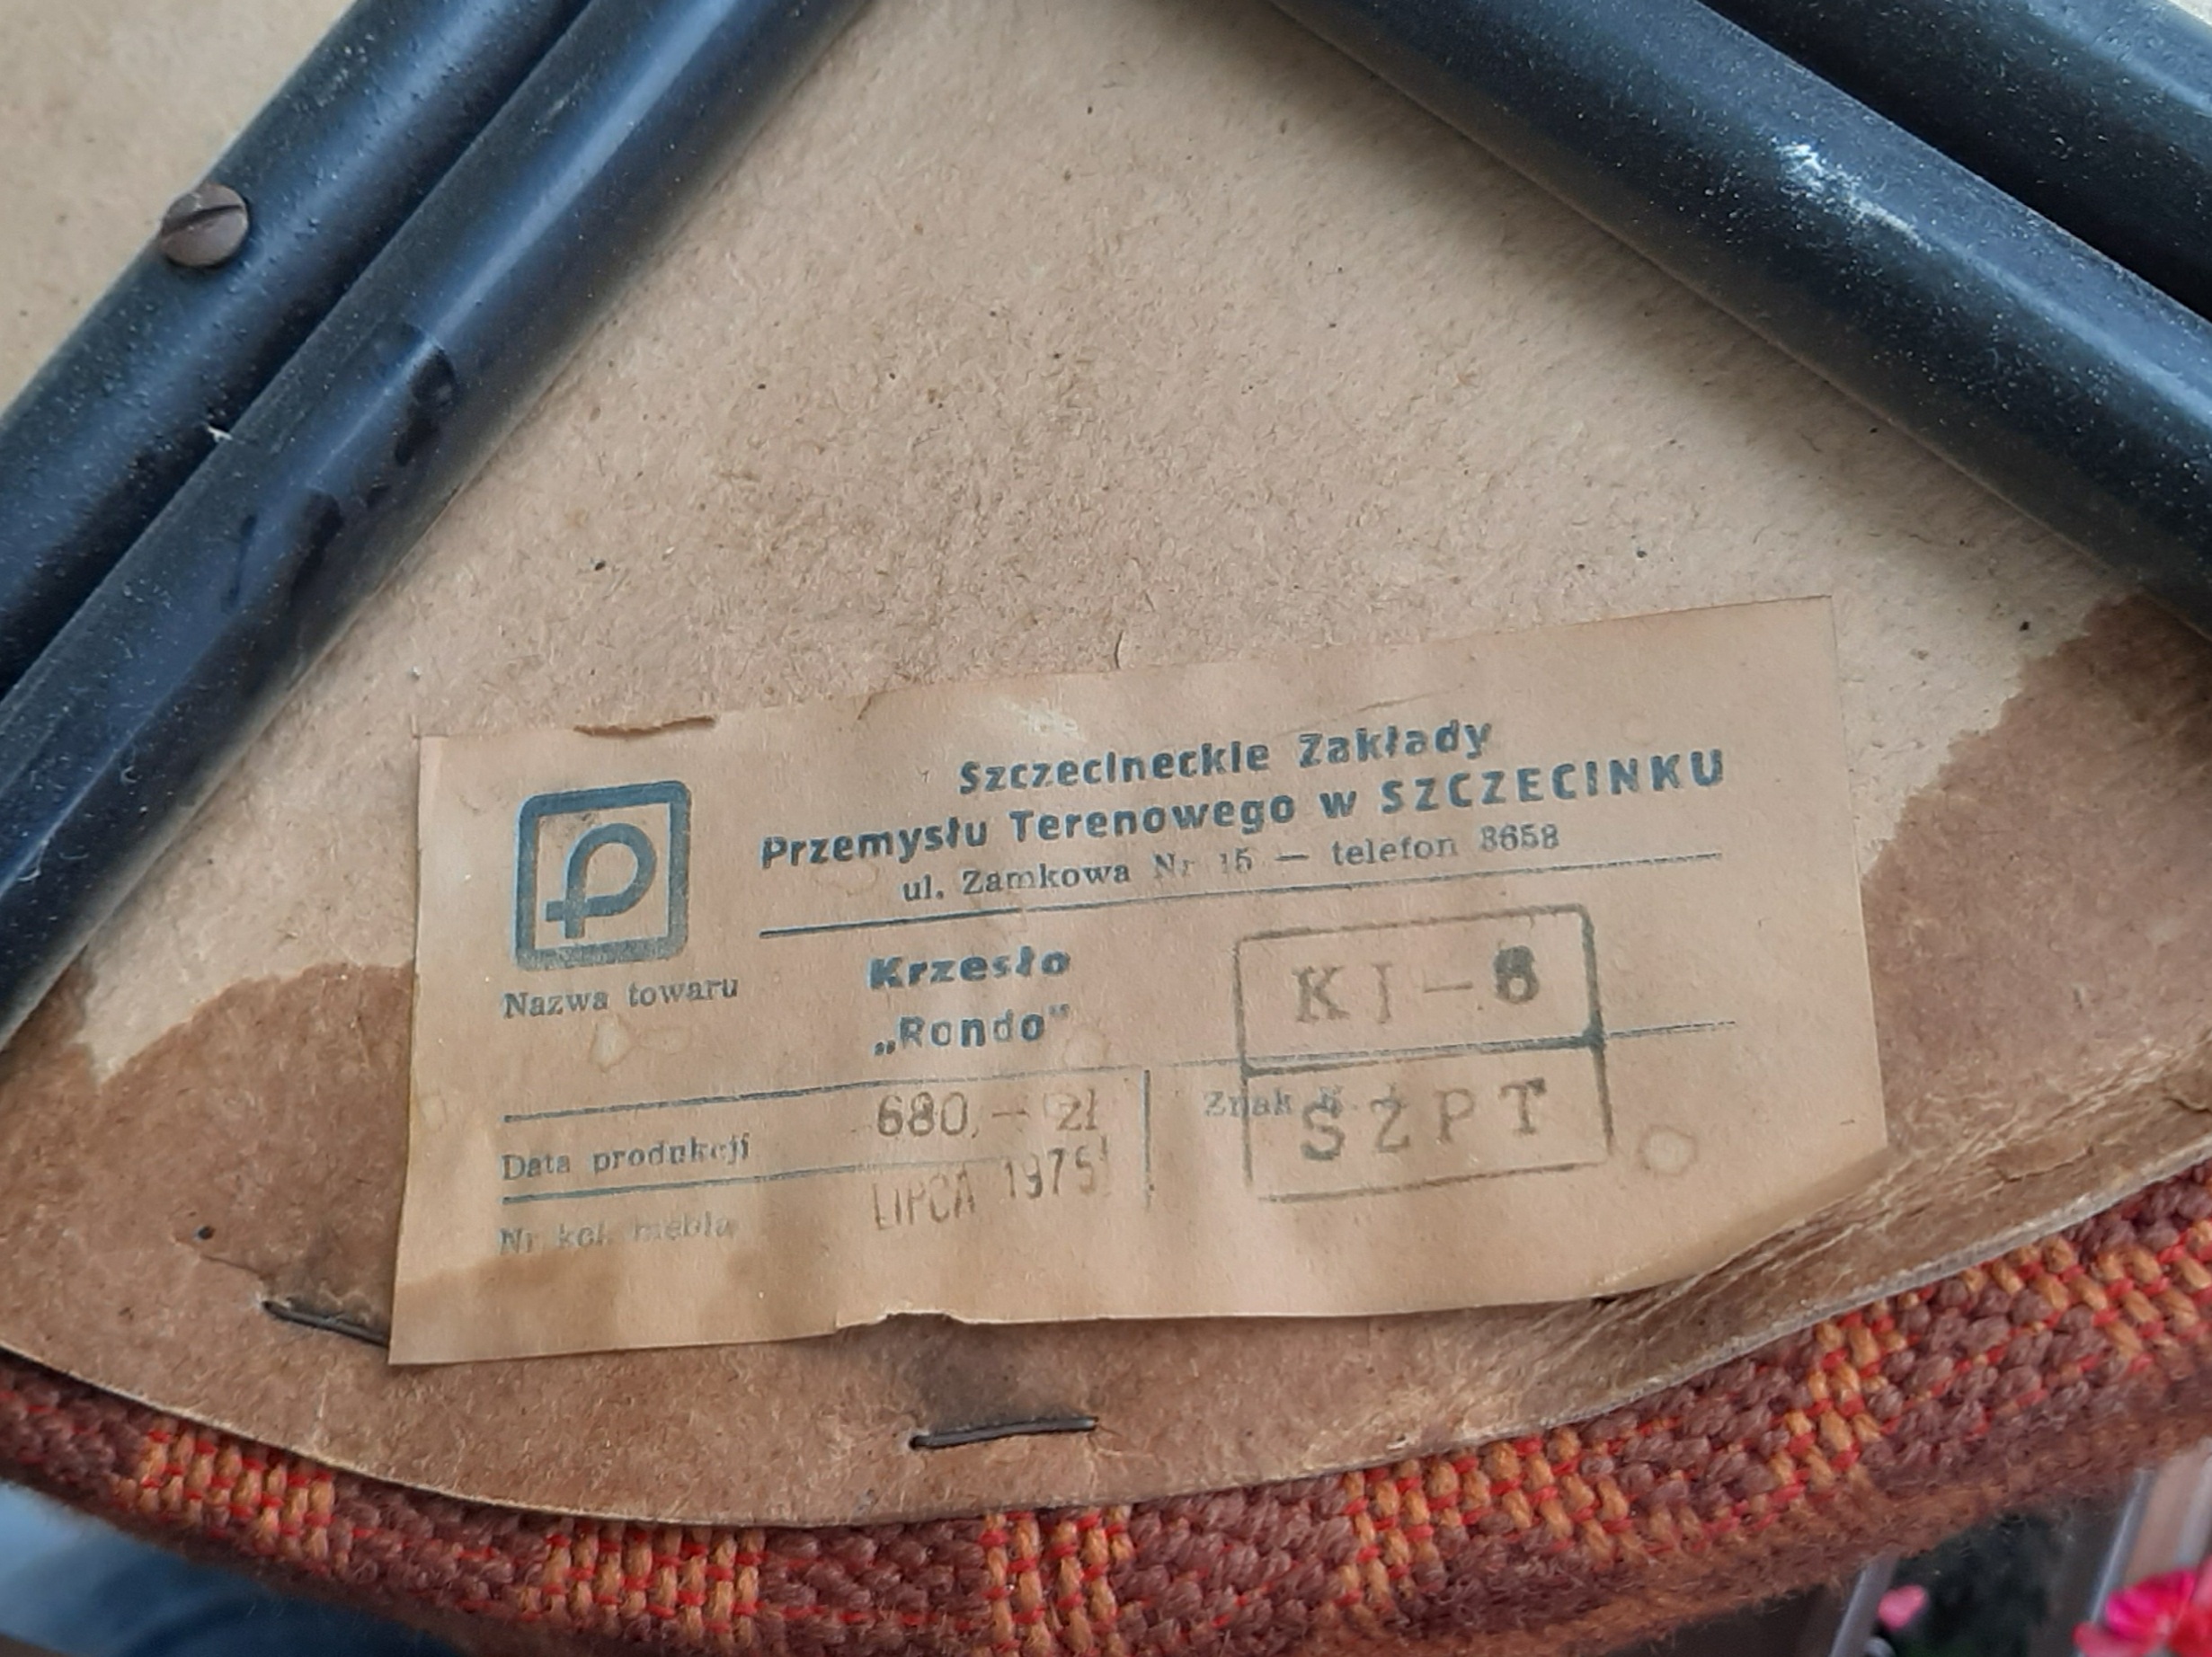 Krzesło Rondo prod. Szczecineckie Zakłady Przemysłu Terenowego w Szczecinku, 1975